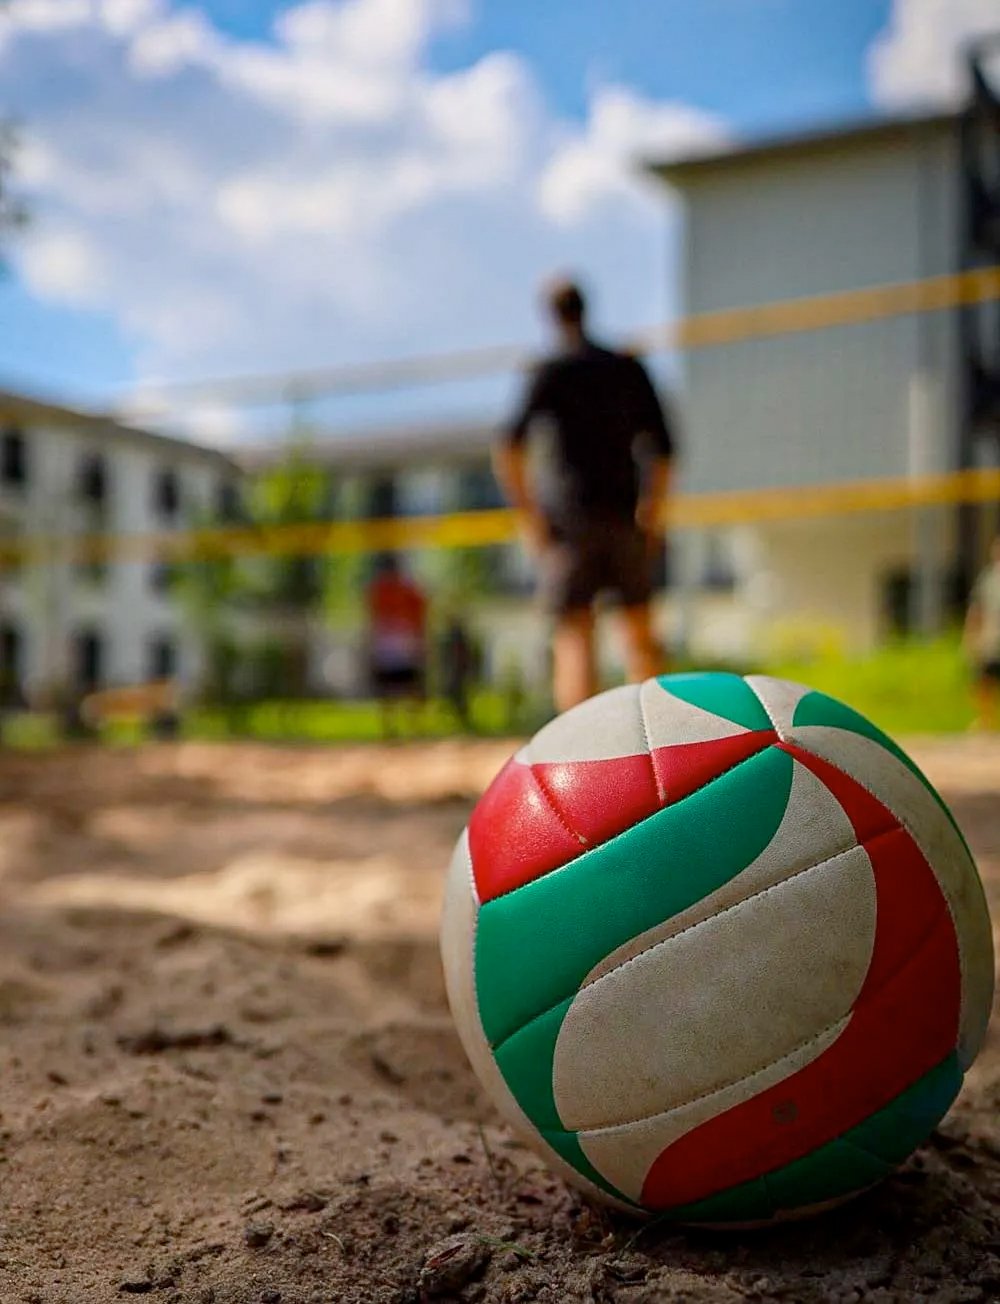 Nahaufnahme: Volleyball im Sand - dahinter das Netz und die Spieler/innen